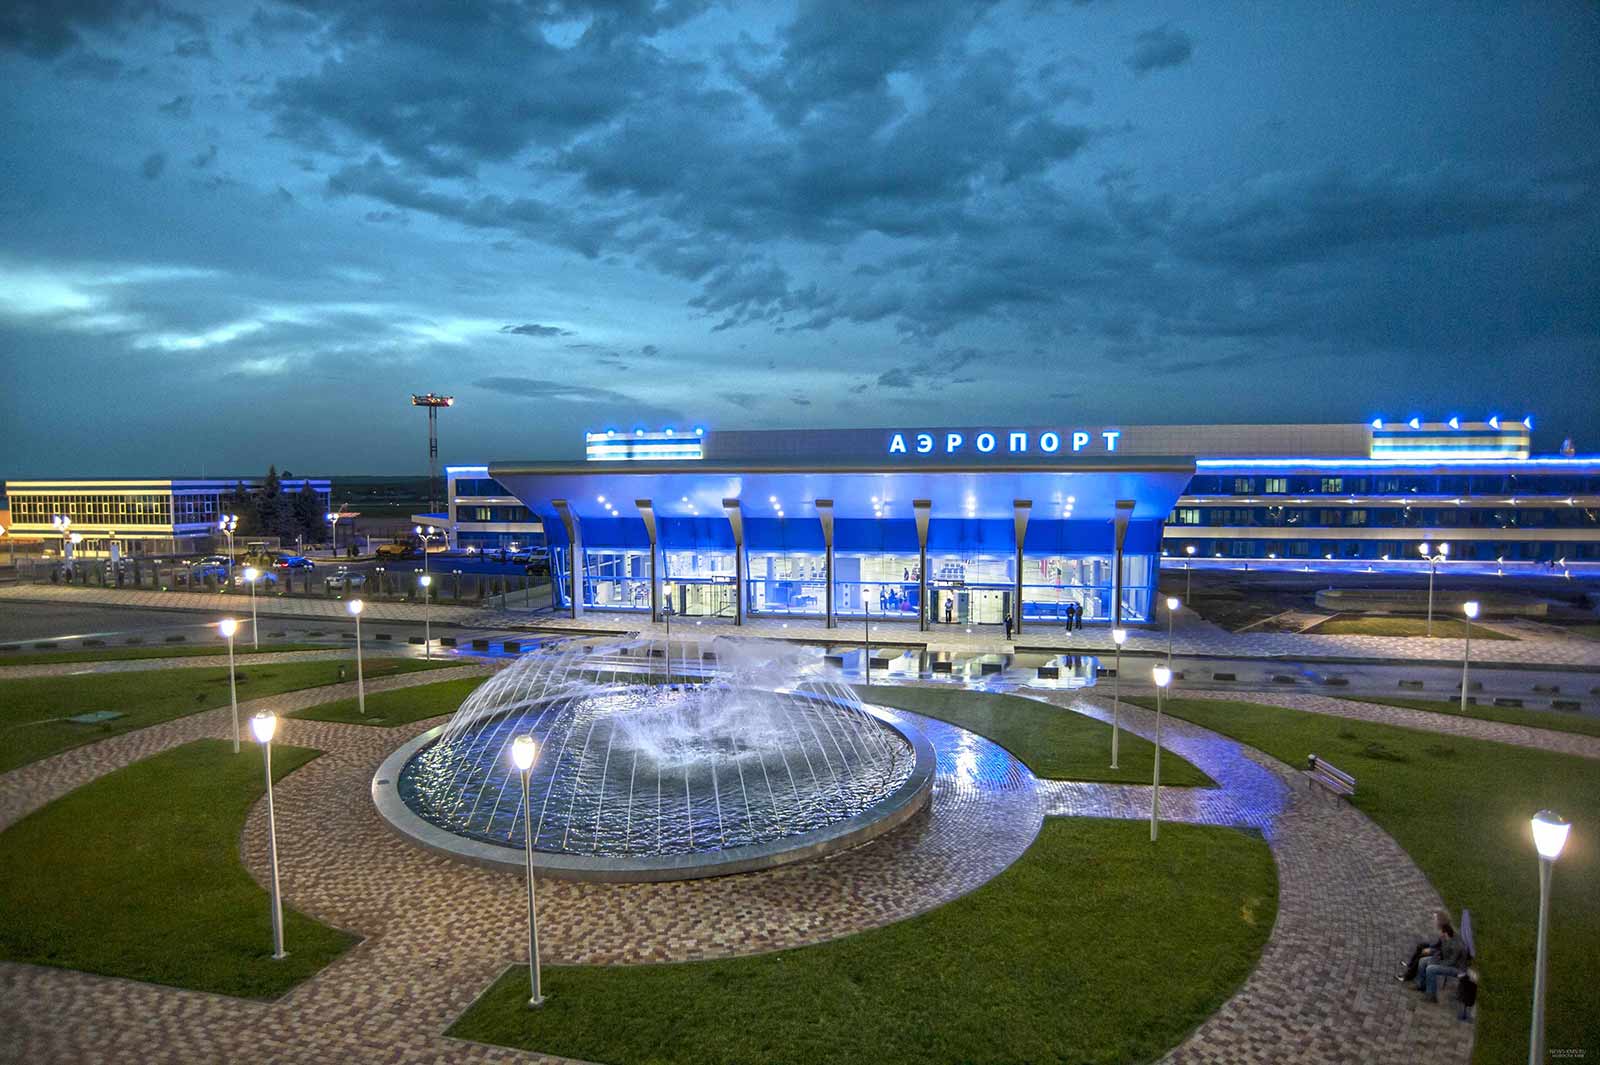 Кисловодчанам предлагают проголосовать за новое название аэропорта Минеральные Воды. Как прославили Кисловодск Ермолов, Лермонтов и Солженицын?